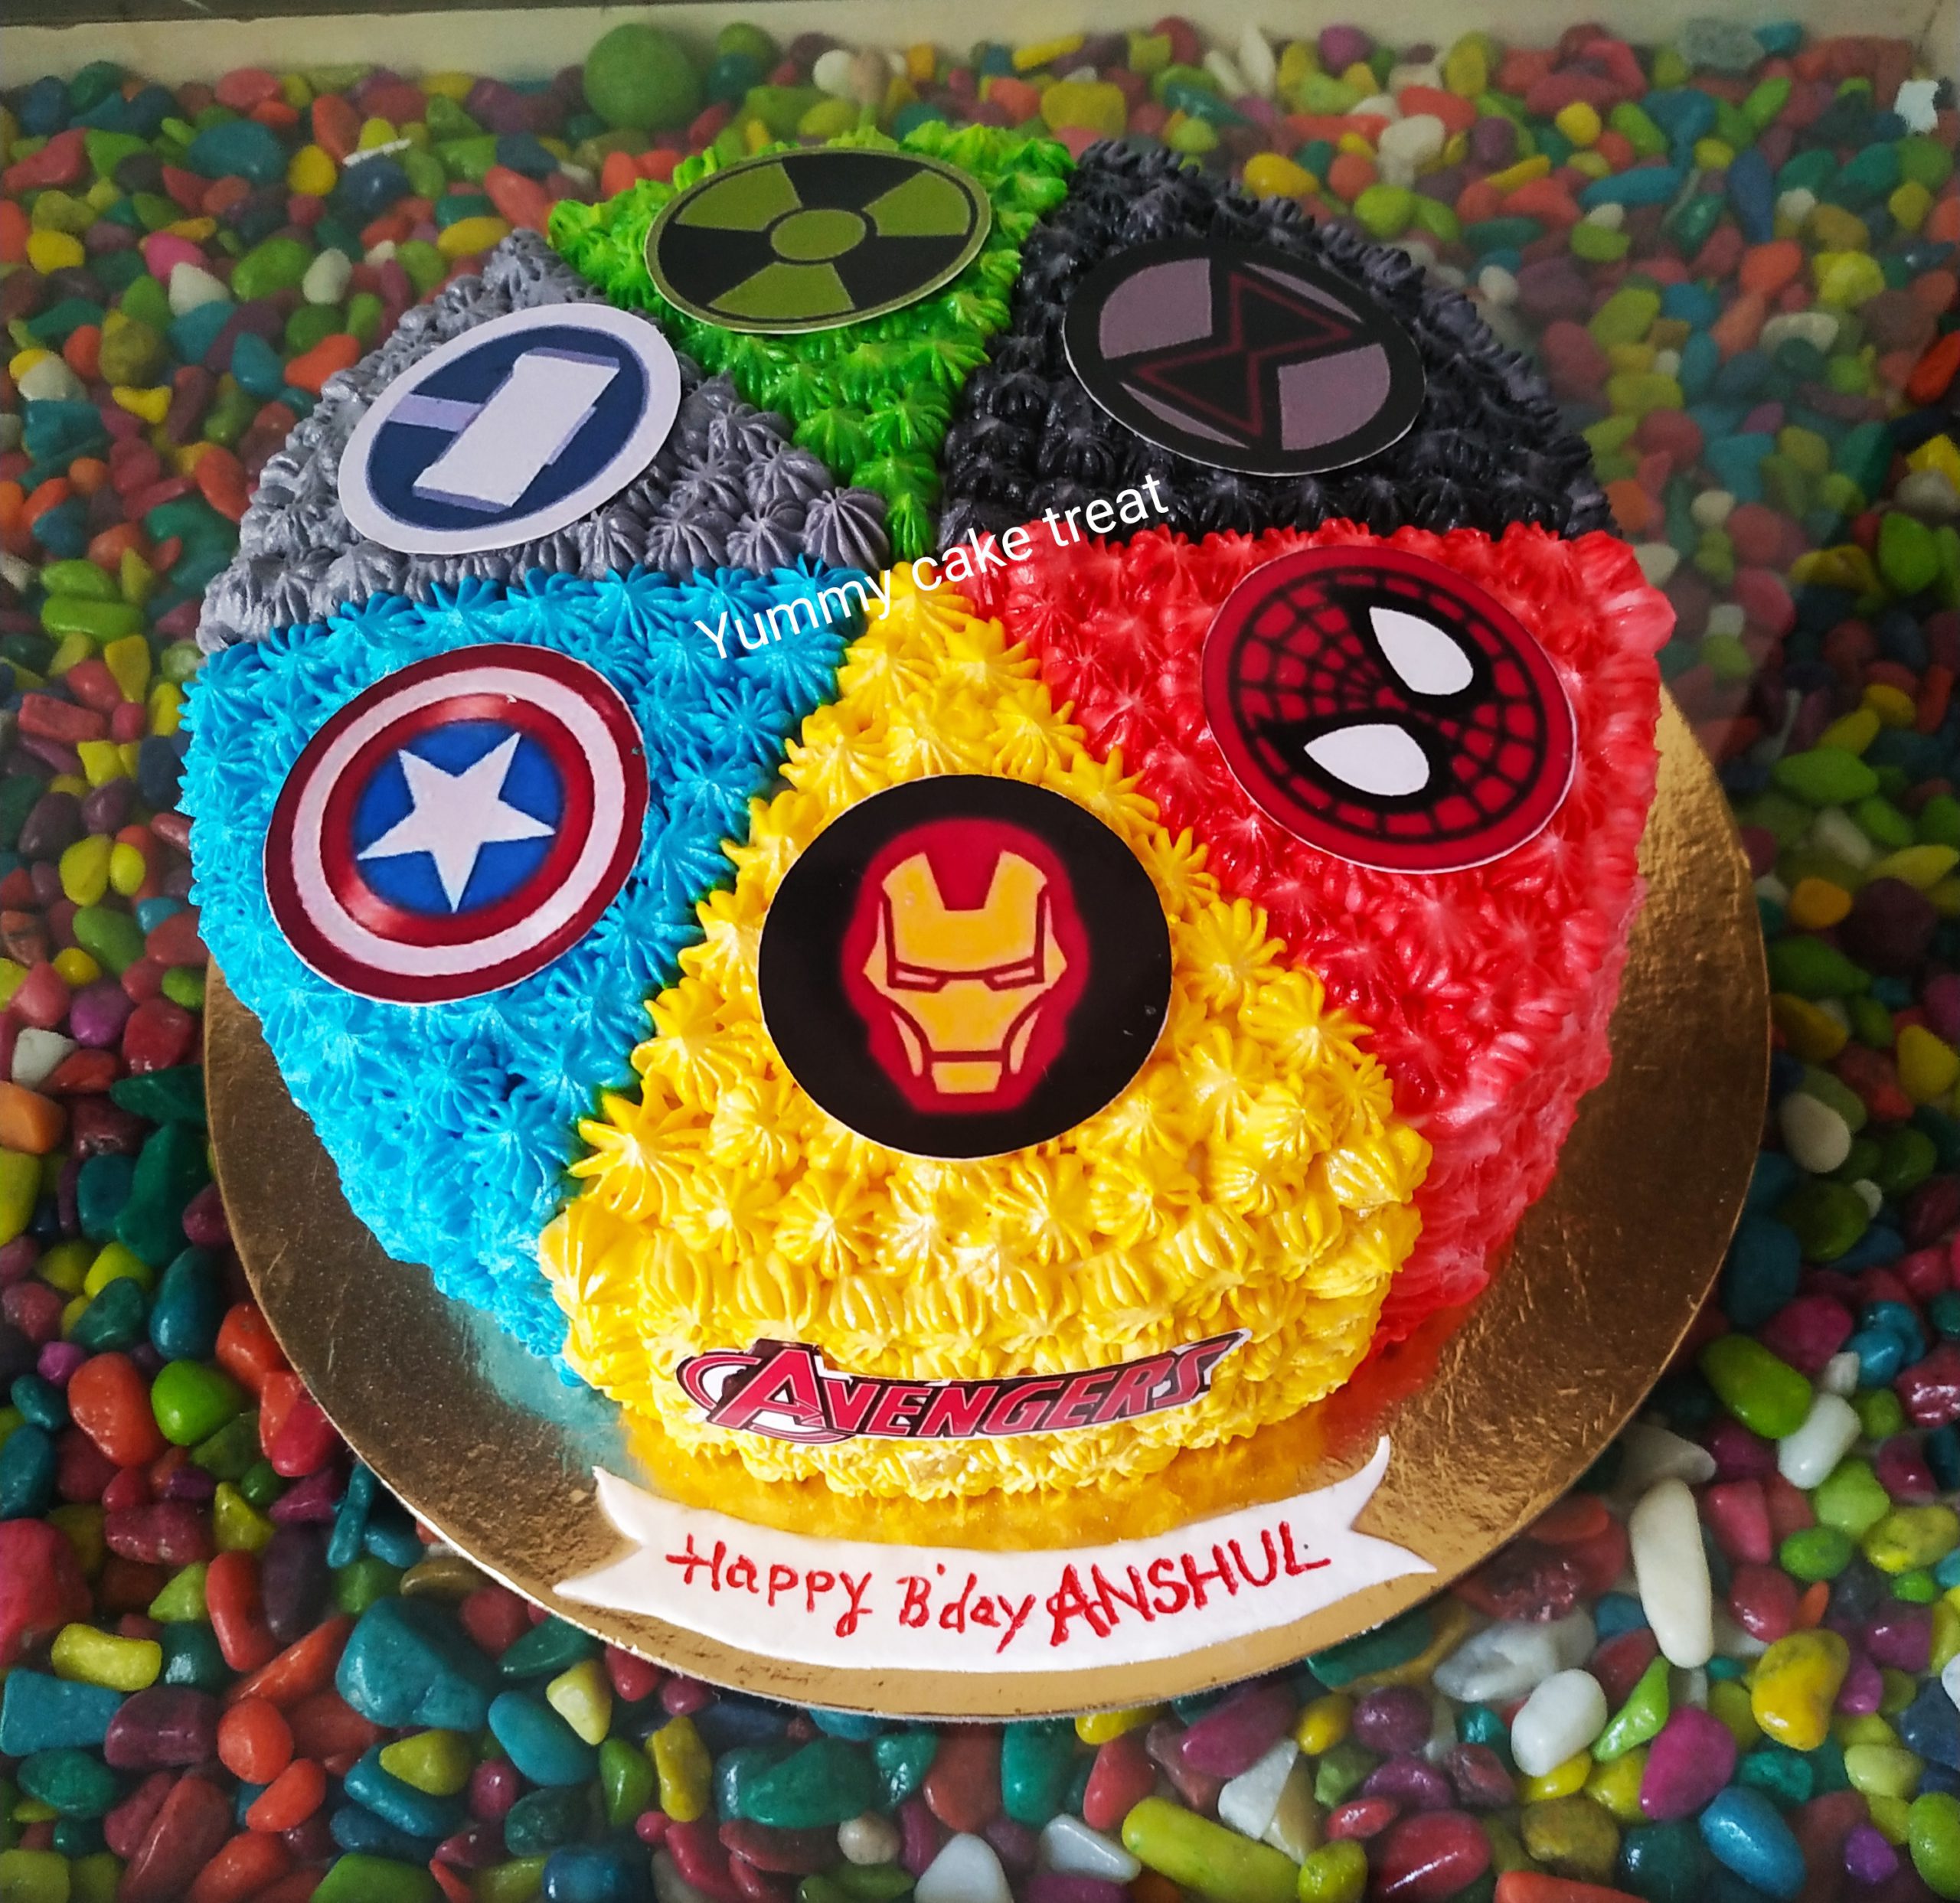 Avengers Cake Design Images Avengers Birthday Cake Ideas  Avengers  birthday cakes Avenger cake Avengers birthday